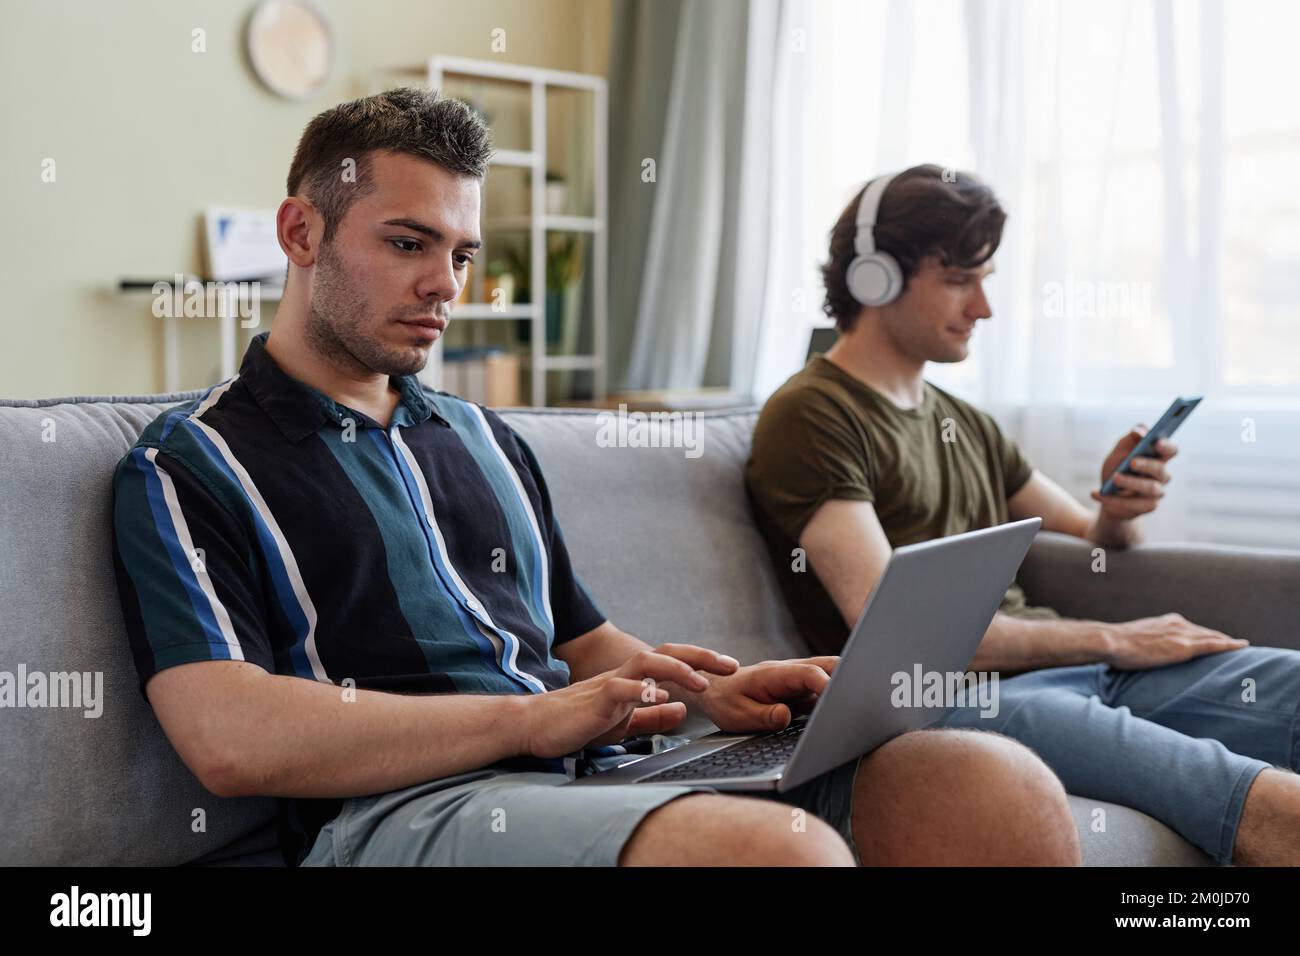 Portrait de deux jeunes hommes vivant ensemble et se reposant sur un canapé à l'aide d'ordinateurs Banque D'Images